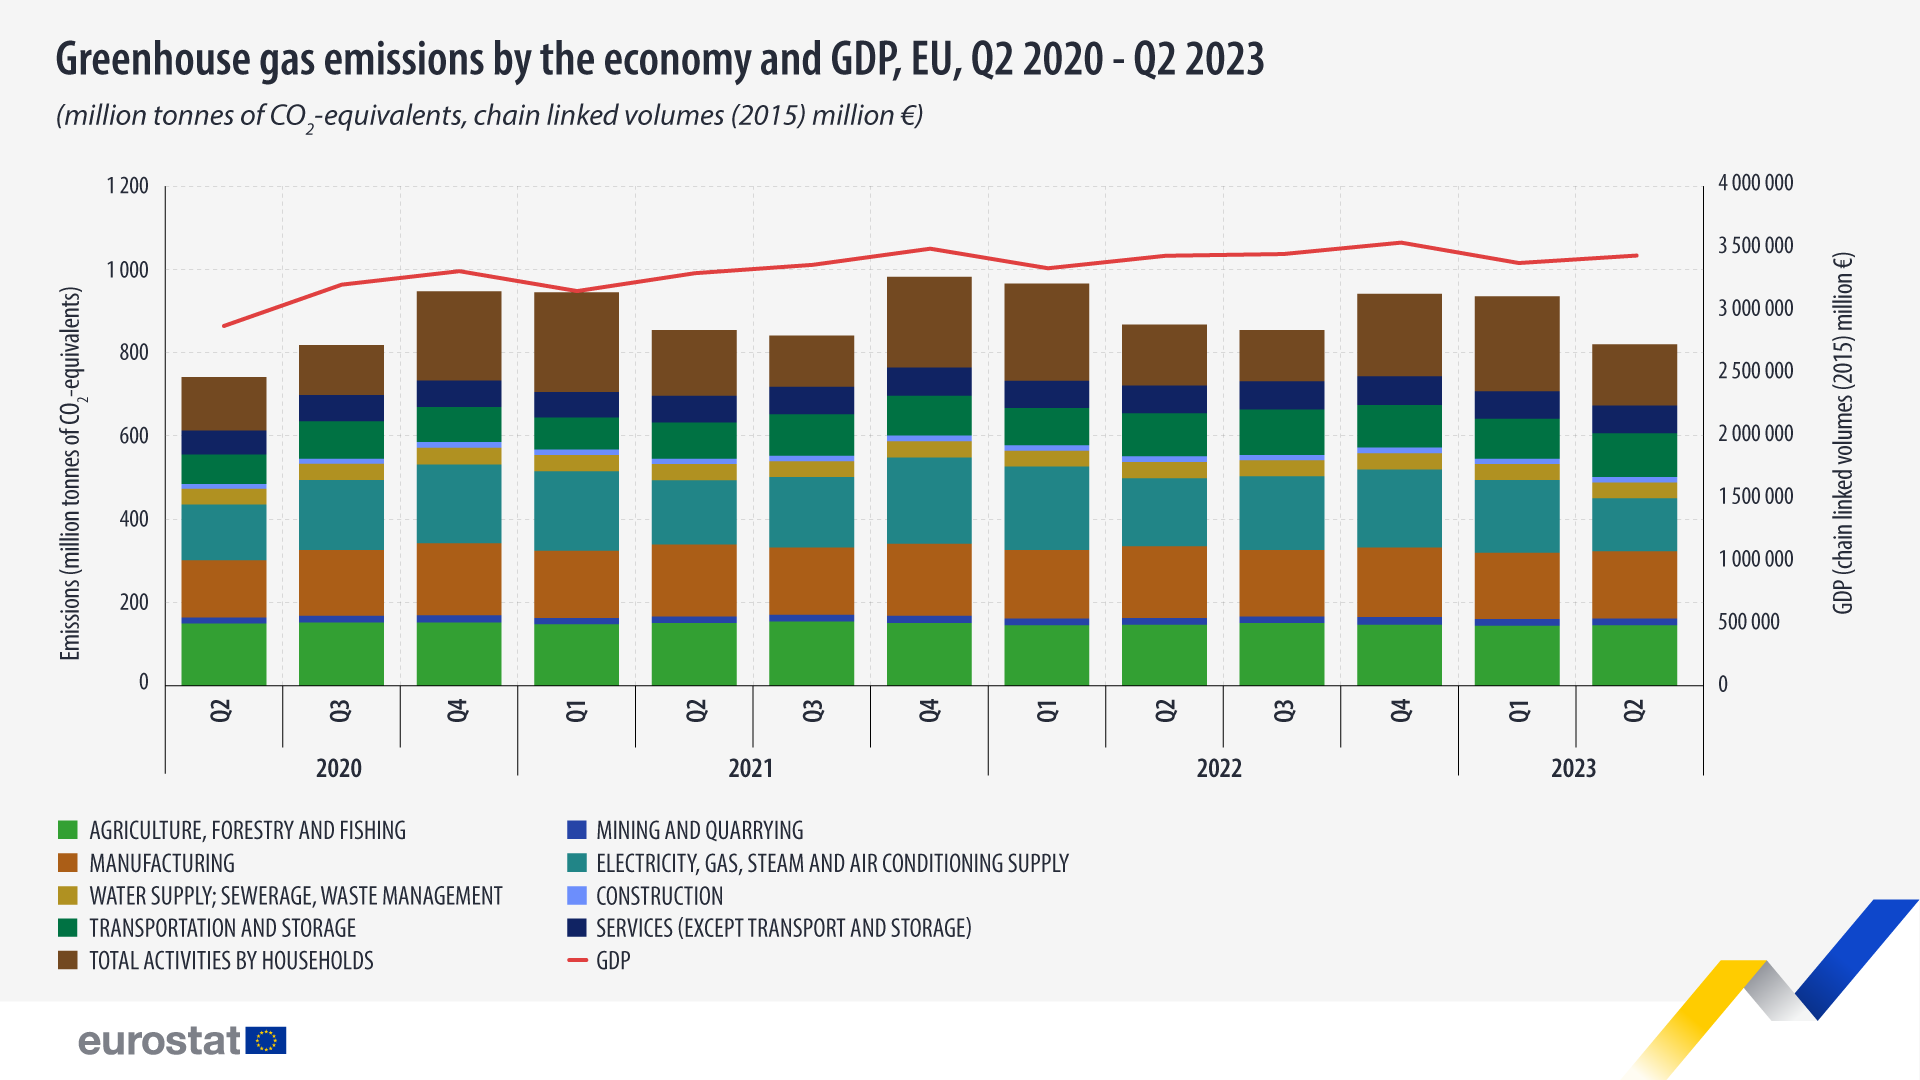 Γράφημα ράβδων: Εκπομπές αερίων θερμοκηπίου ανά οικονομία και ΑΕΠ, εκατομμύρια τόνοι ισοδυνάμων CO2, όγκοι συνδεδεμένοι με αλυσίδα (2015), εκατομμύρια €, ΕΕ 2ο τρίμηνο 2020-2ο τρίμηνο 2023